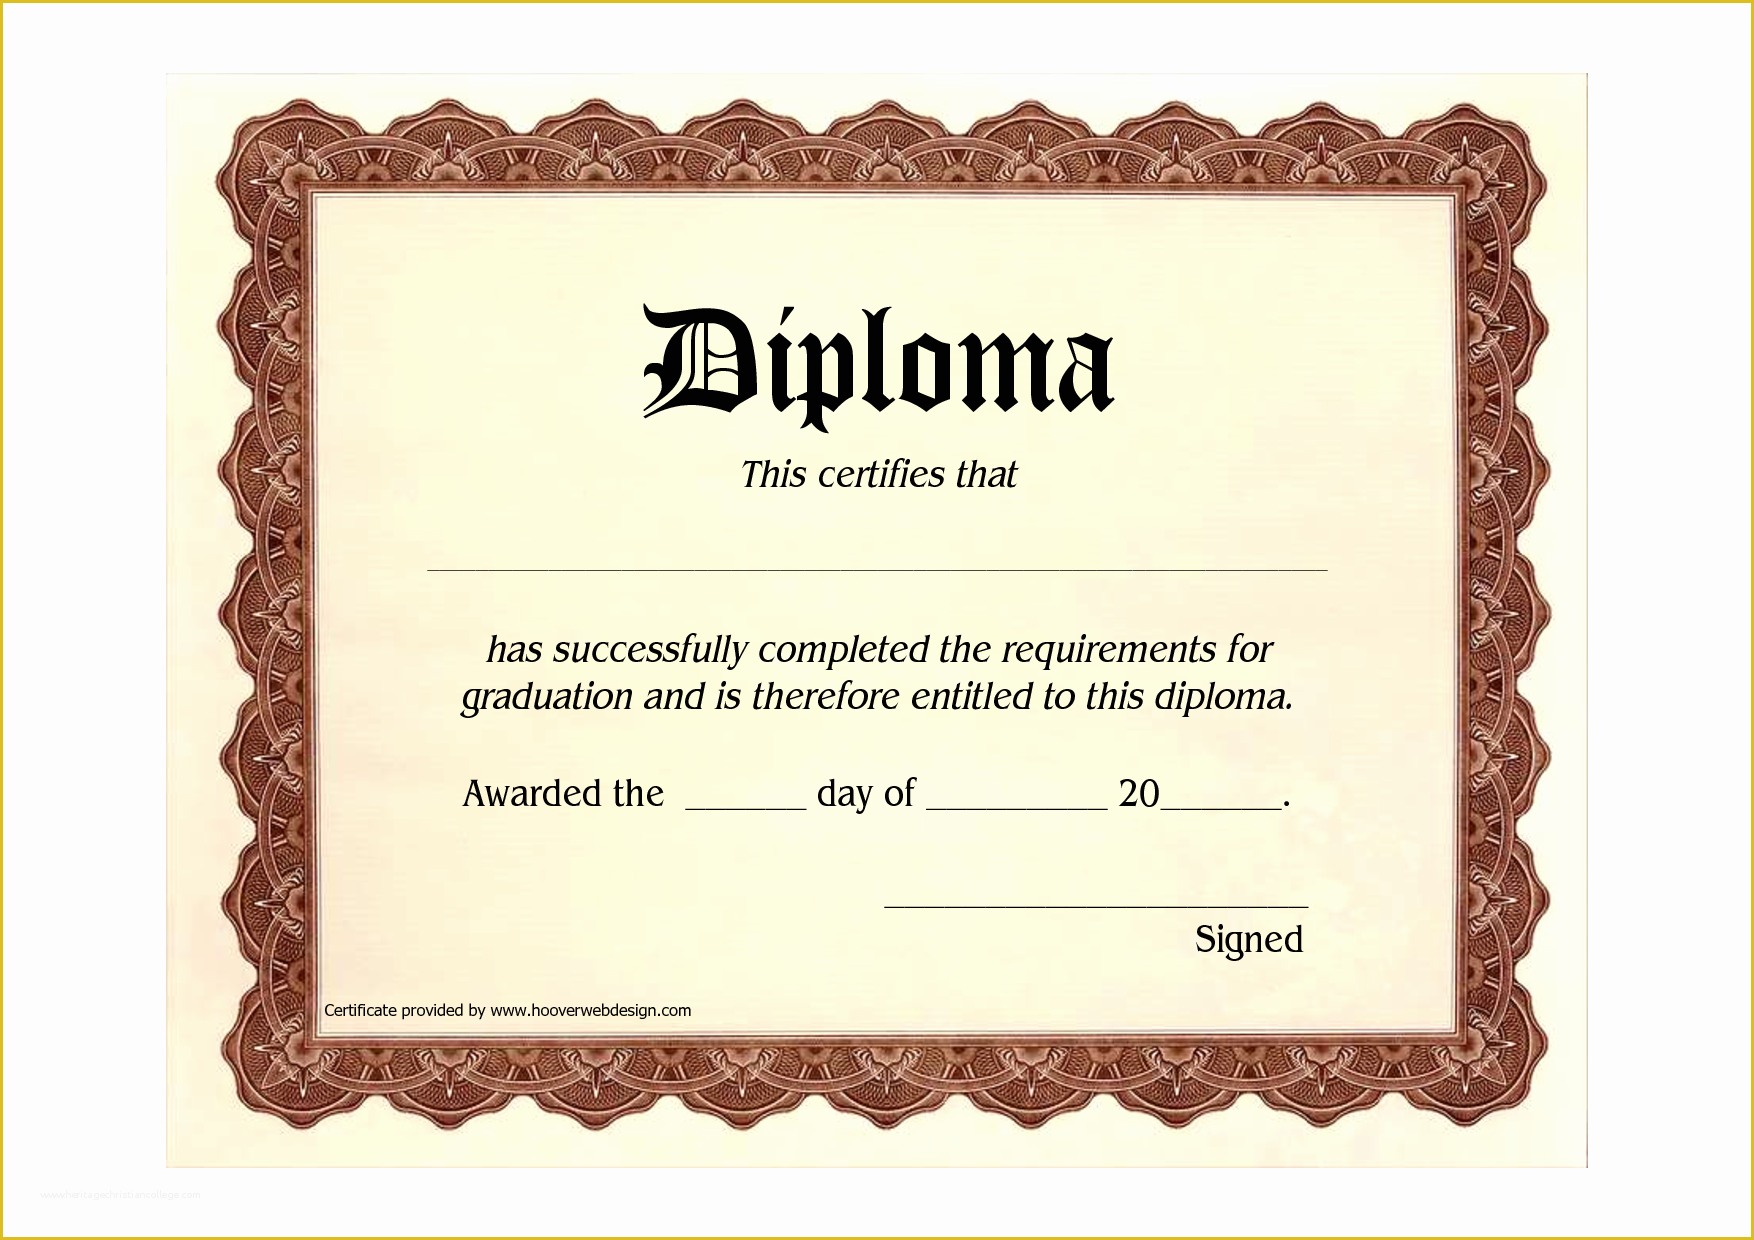 Printable High School Diploma With Name